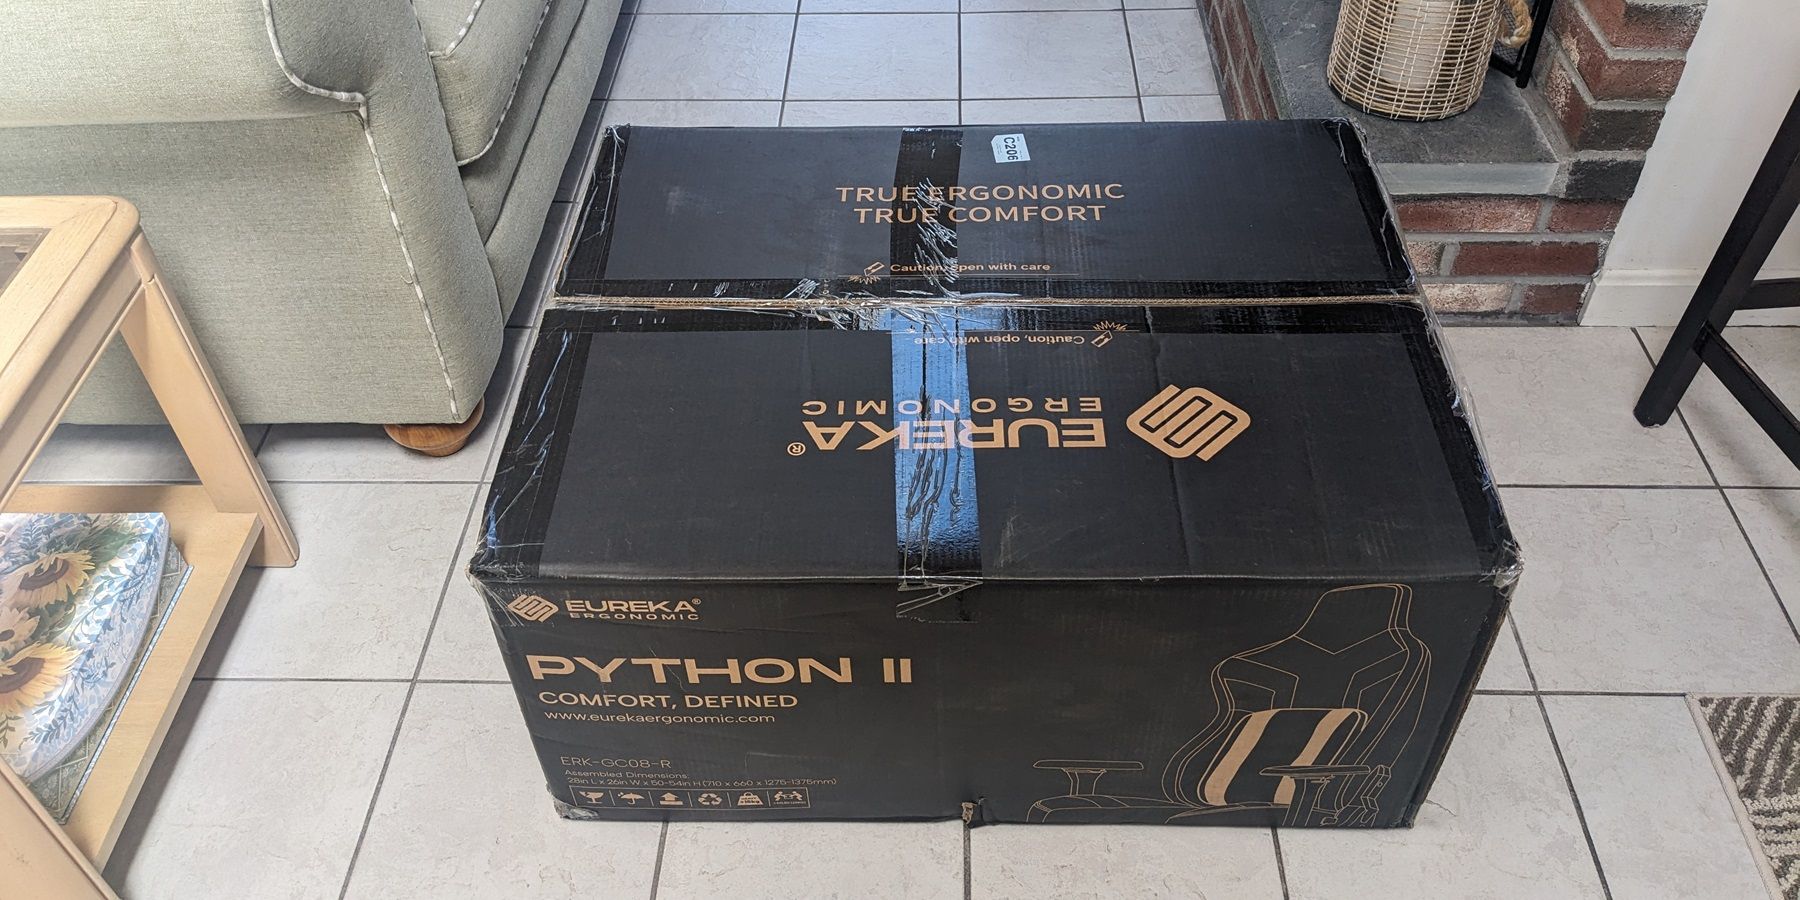 Eureka Ergonomic Python II Packaging